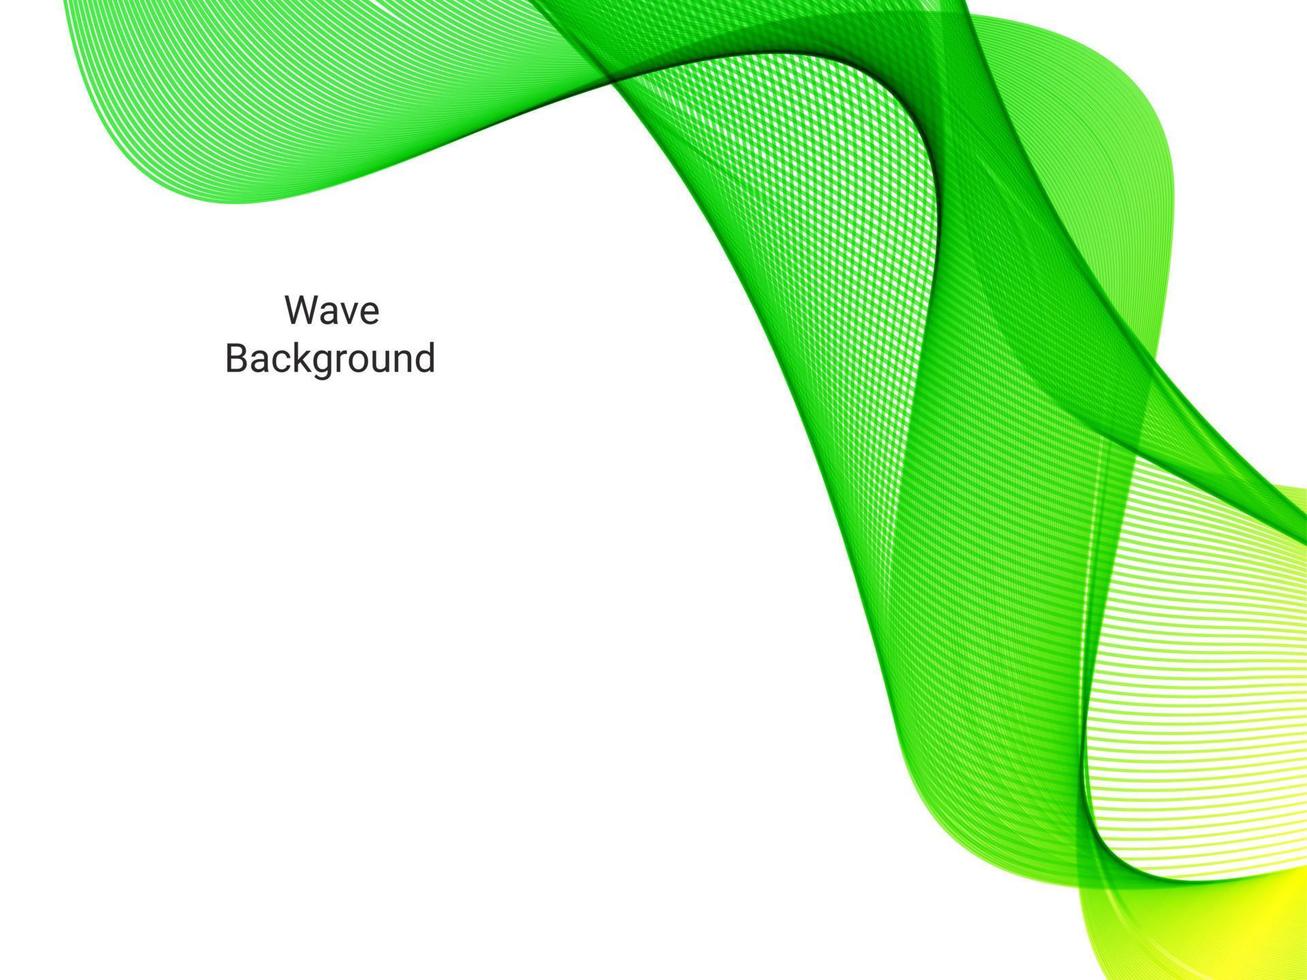 vague élégante qui coule verte dans un motif d'illustration de fond blanc vecteur